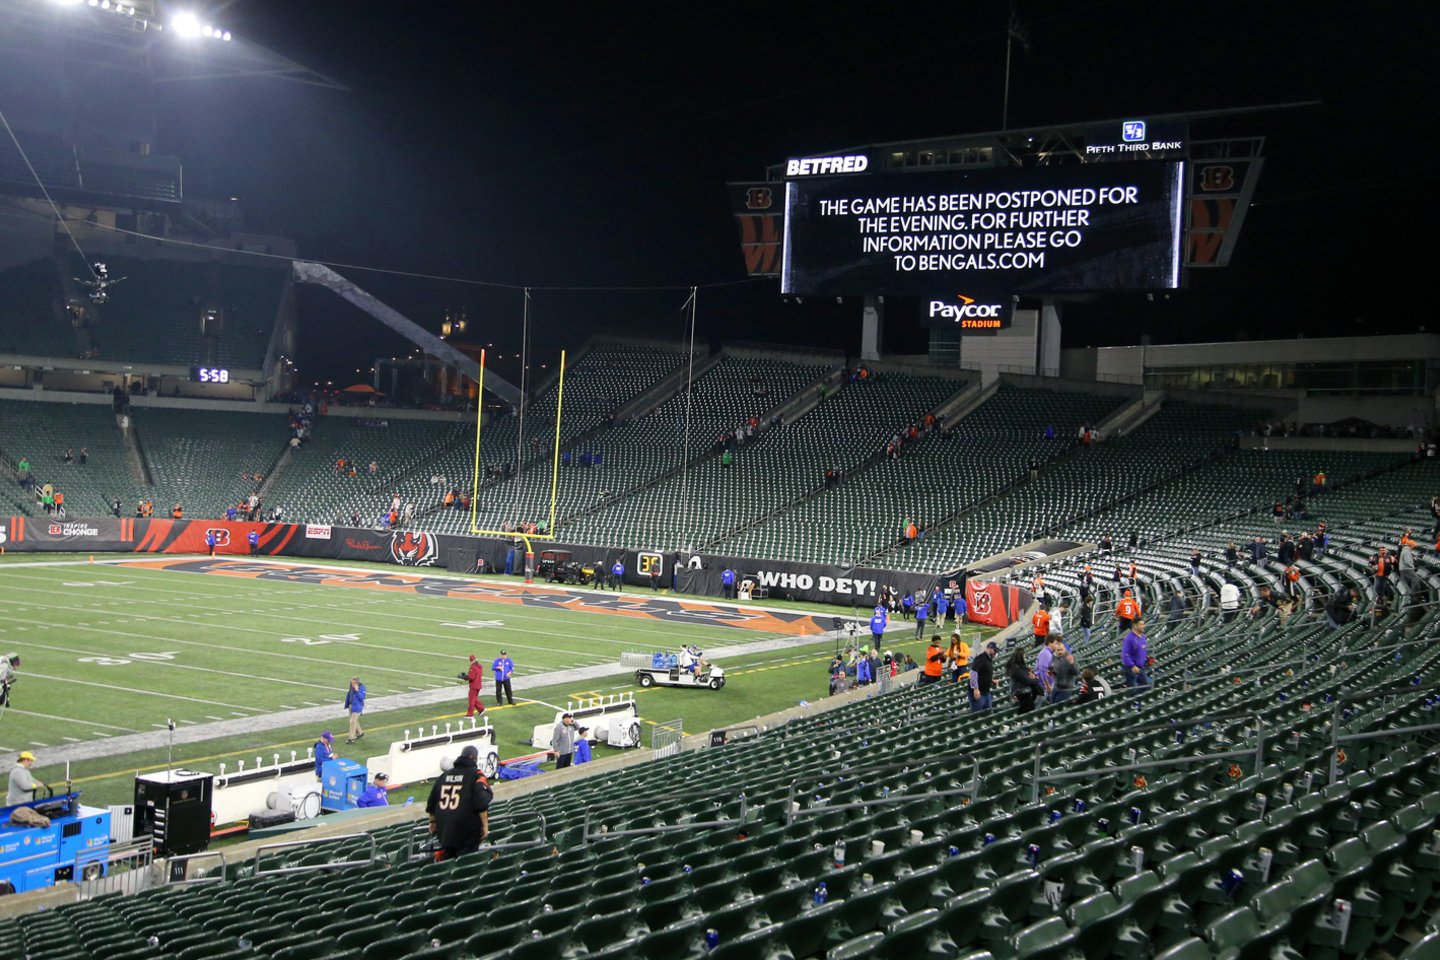  NFL rungtynės buvo sustabdytos.<br> Reuters/Scanpix nuotr.